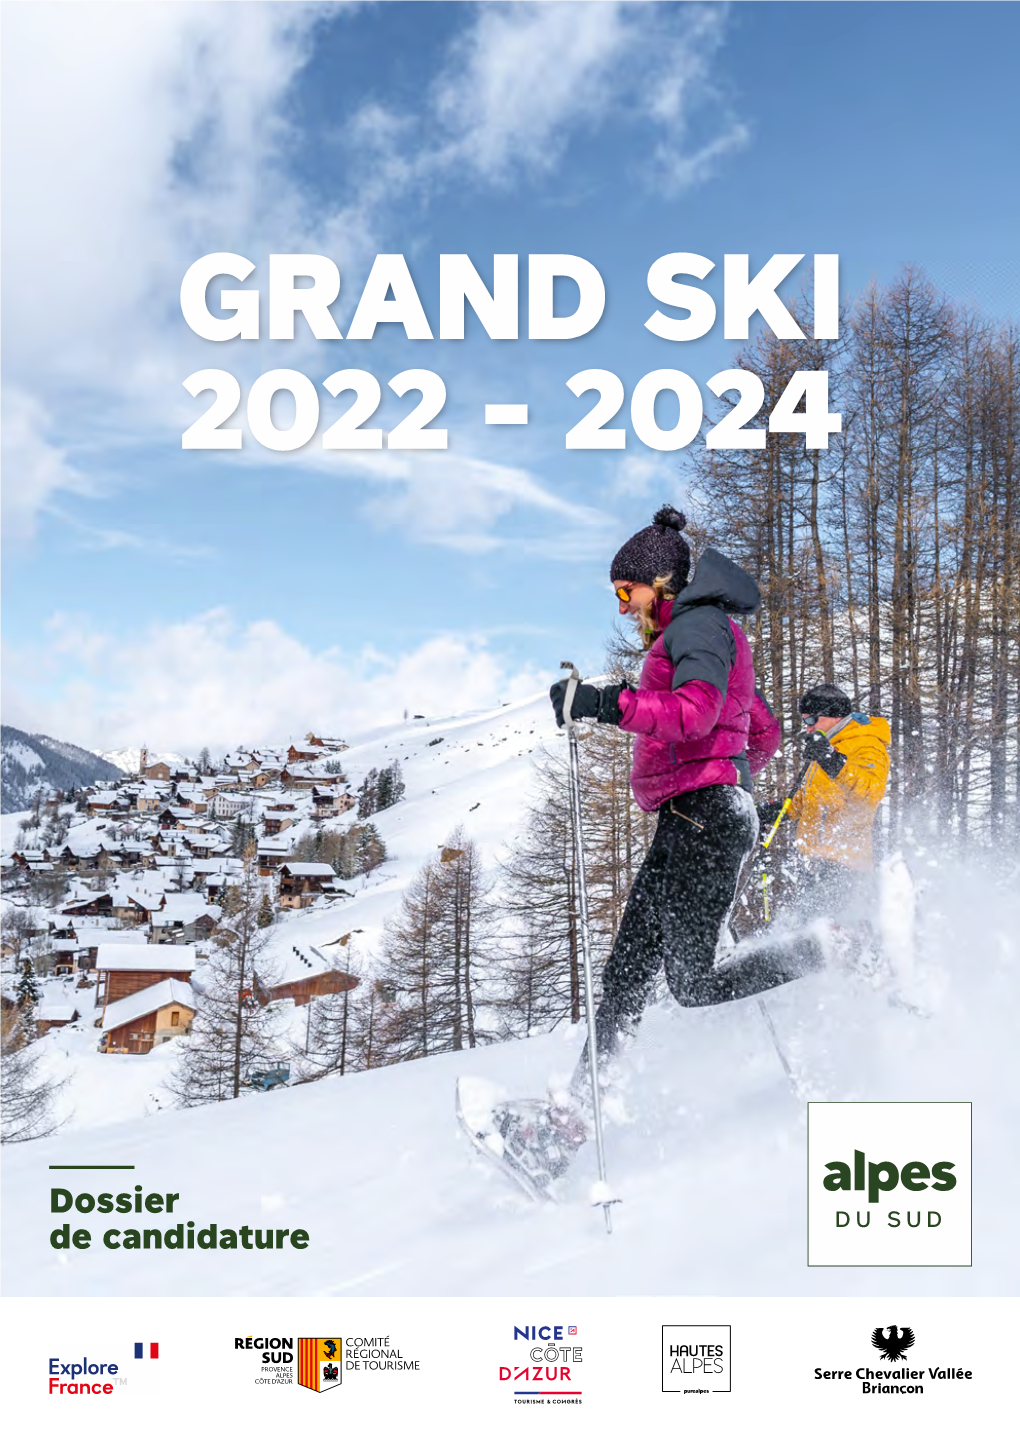 Dossier De Candidature GRAND SKI 2022 - 2024